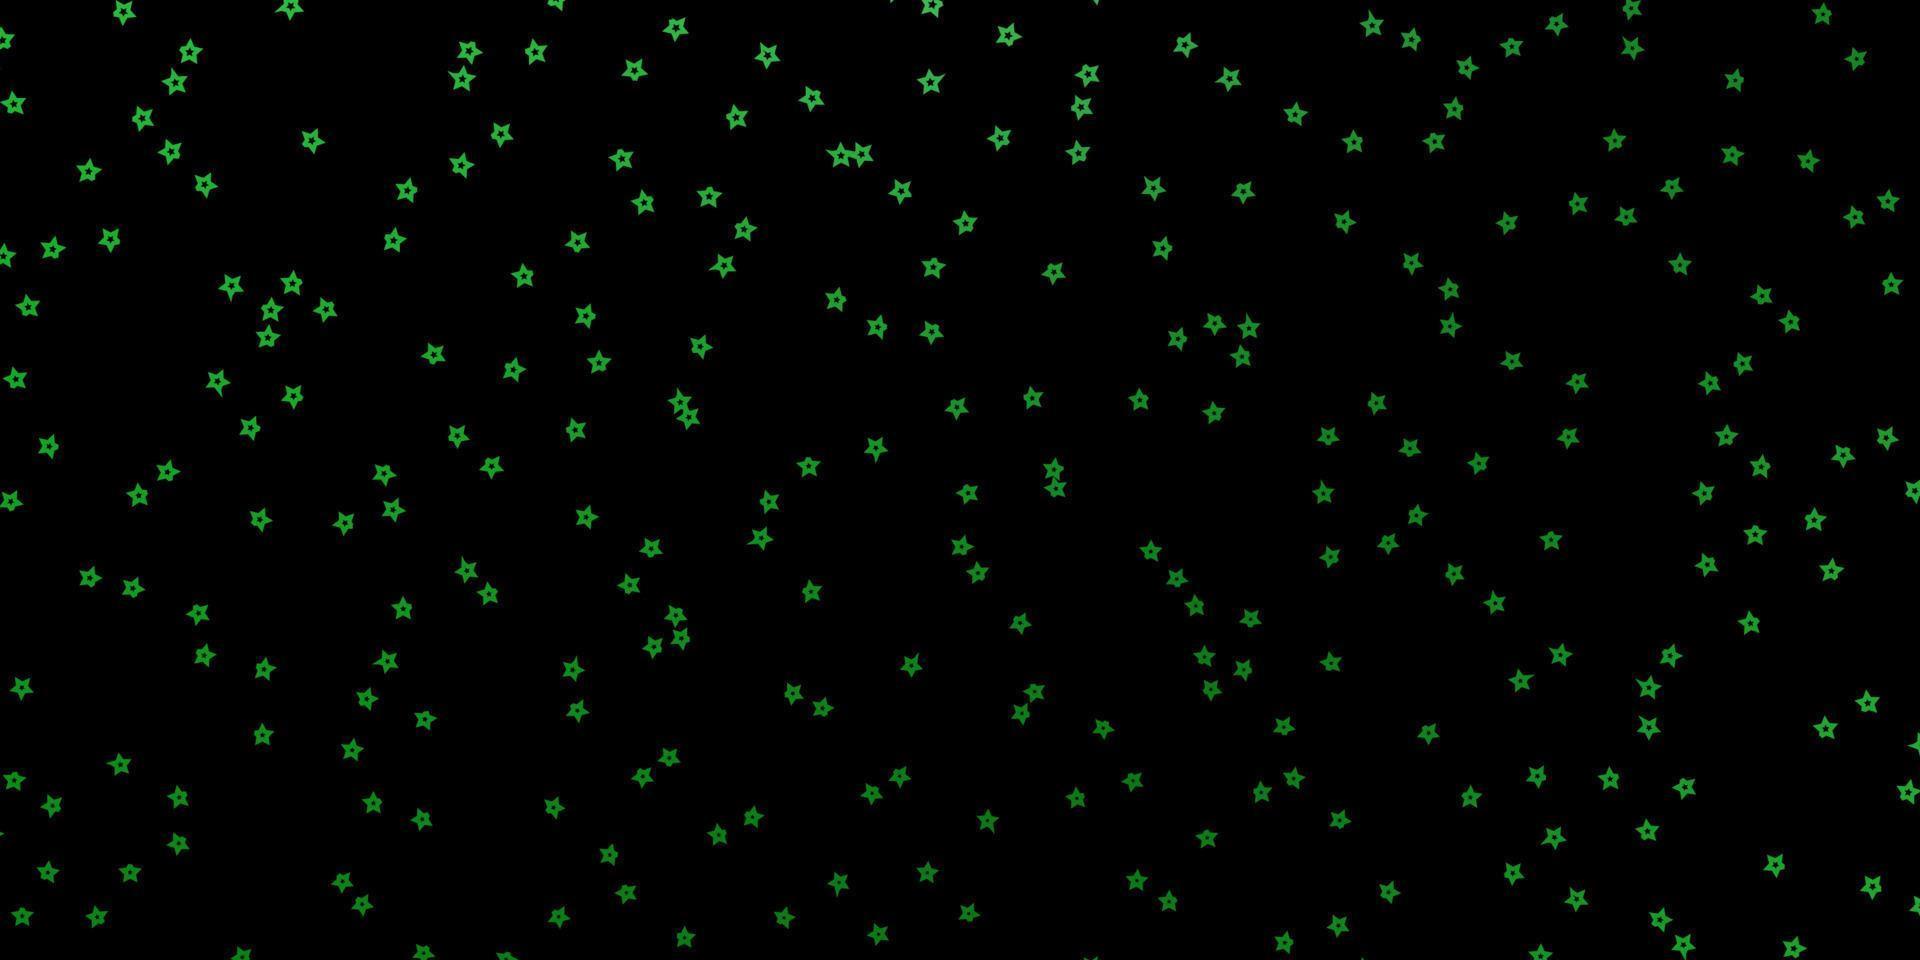 layout de vetor verde escuro com estrelas brilhantes.